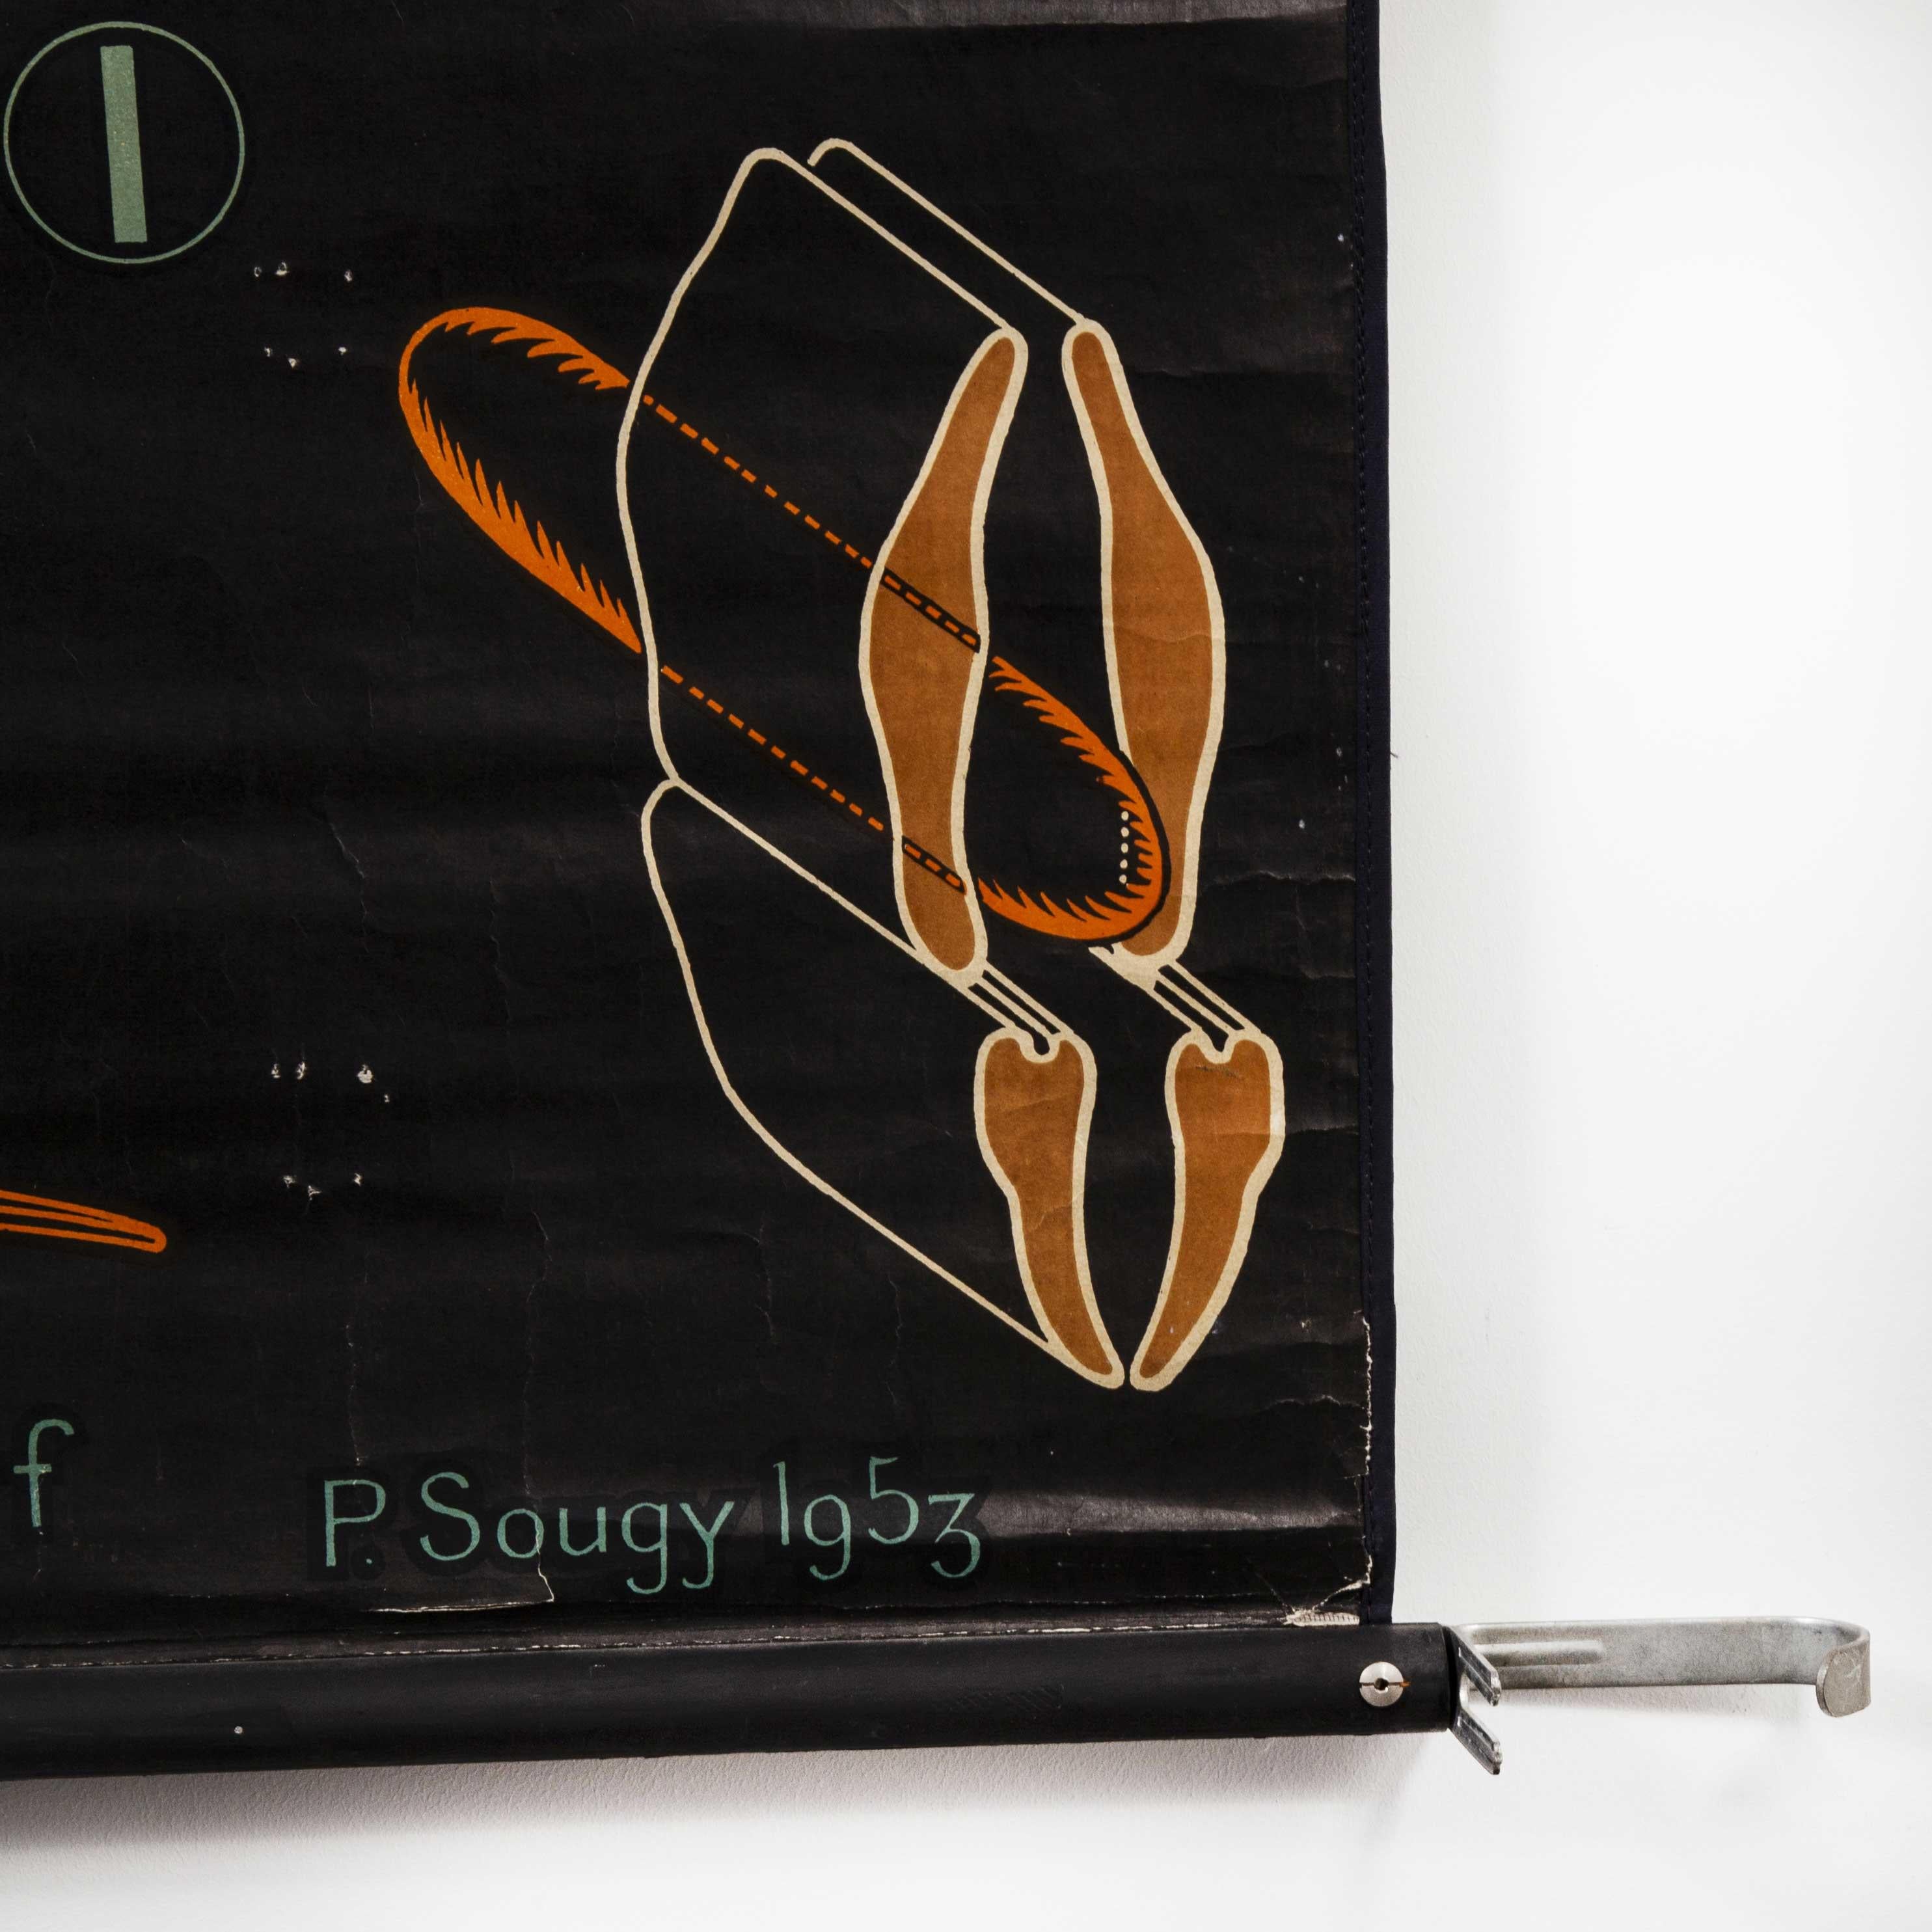 Paper 1953 Dr Auzoux French Educational Chart - P.Sougy - Sauterelle 'Grasshopper' S45 For Sale